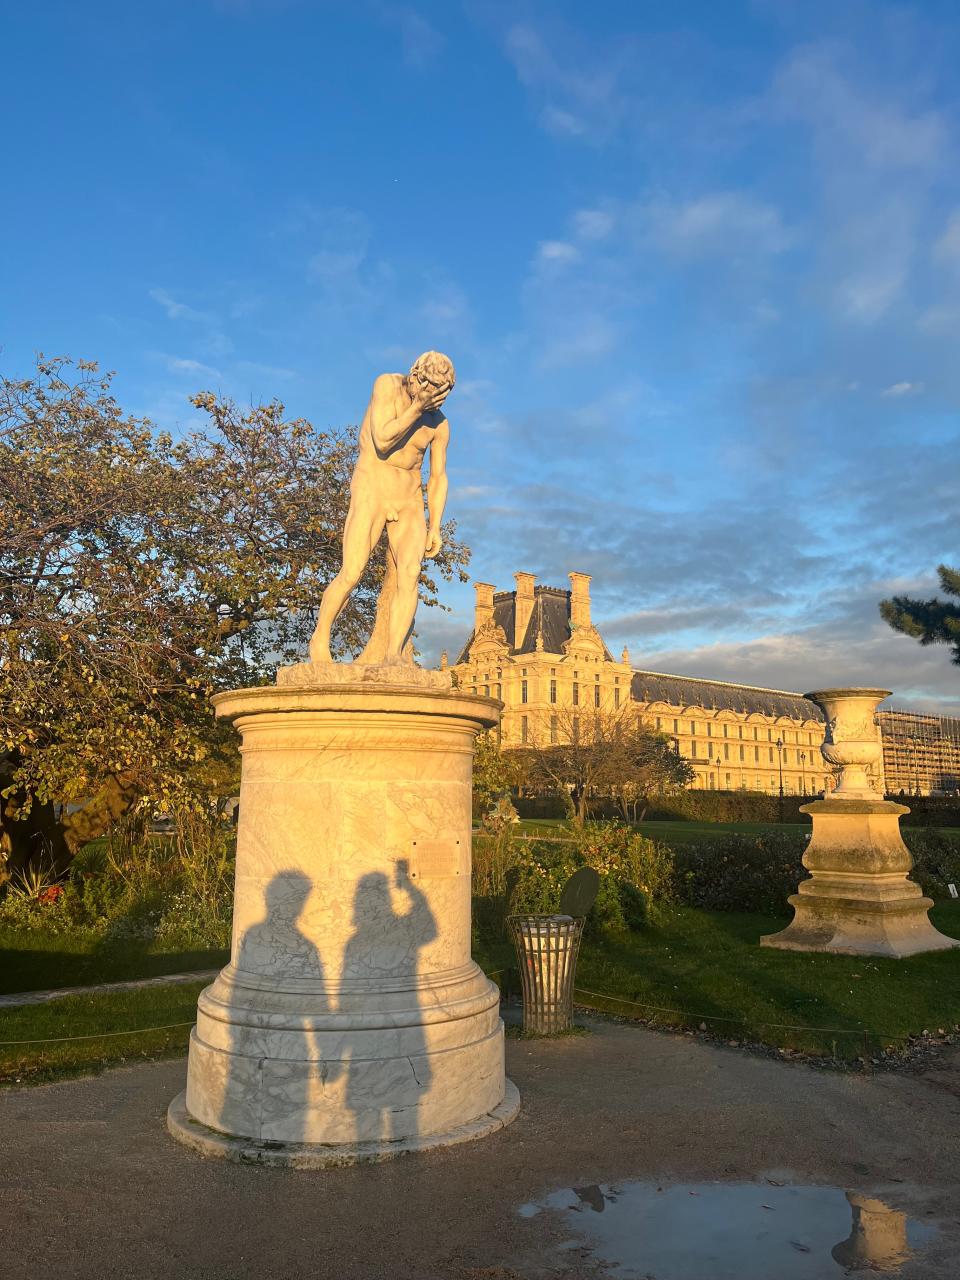 Statue Cain Venant de Tuer son Frère at the Jardin des Tuileries in Paris.